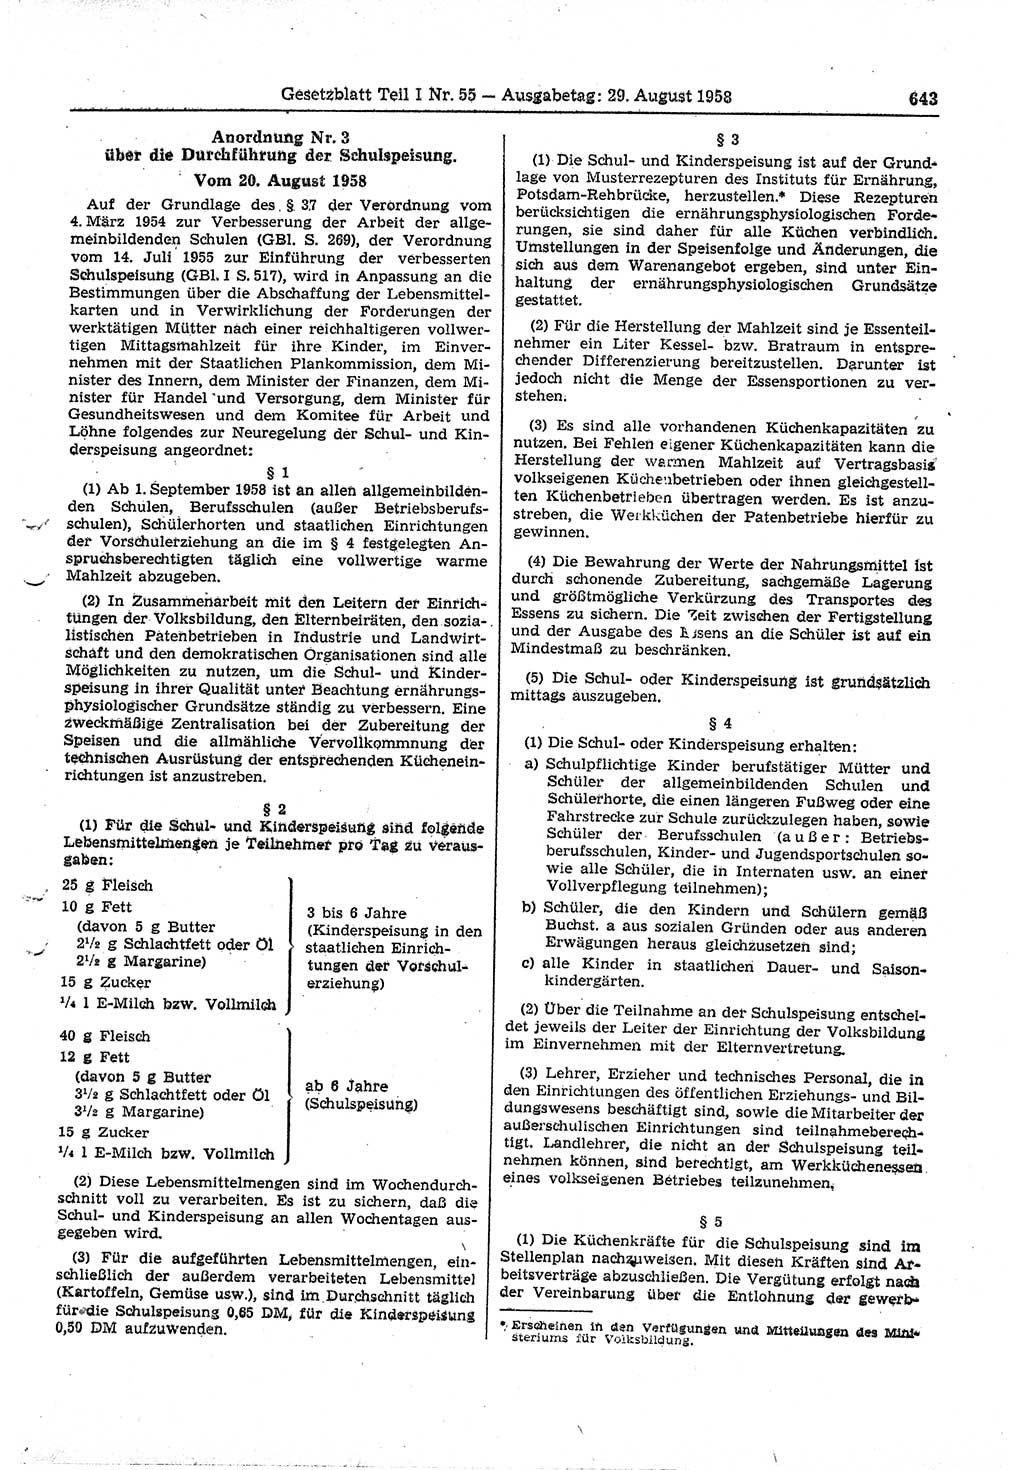 Gesetzblatt (GBl.) der Deutschen Demokratischen Republik (DDR) Teil Ⅰ 1958, Seite 643 (GBl. DDR Ⅰ 1958, S. 643)